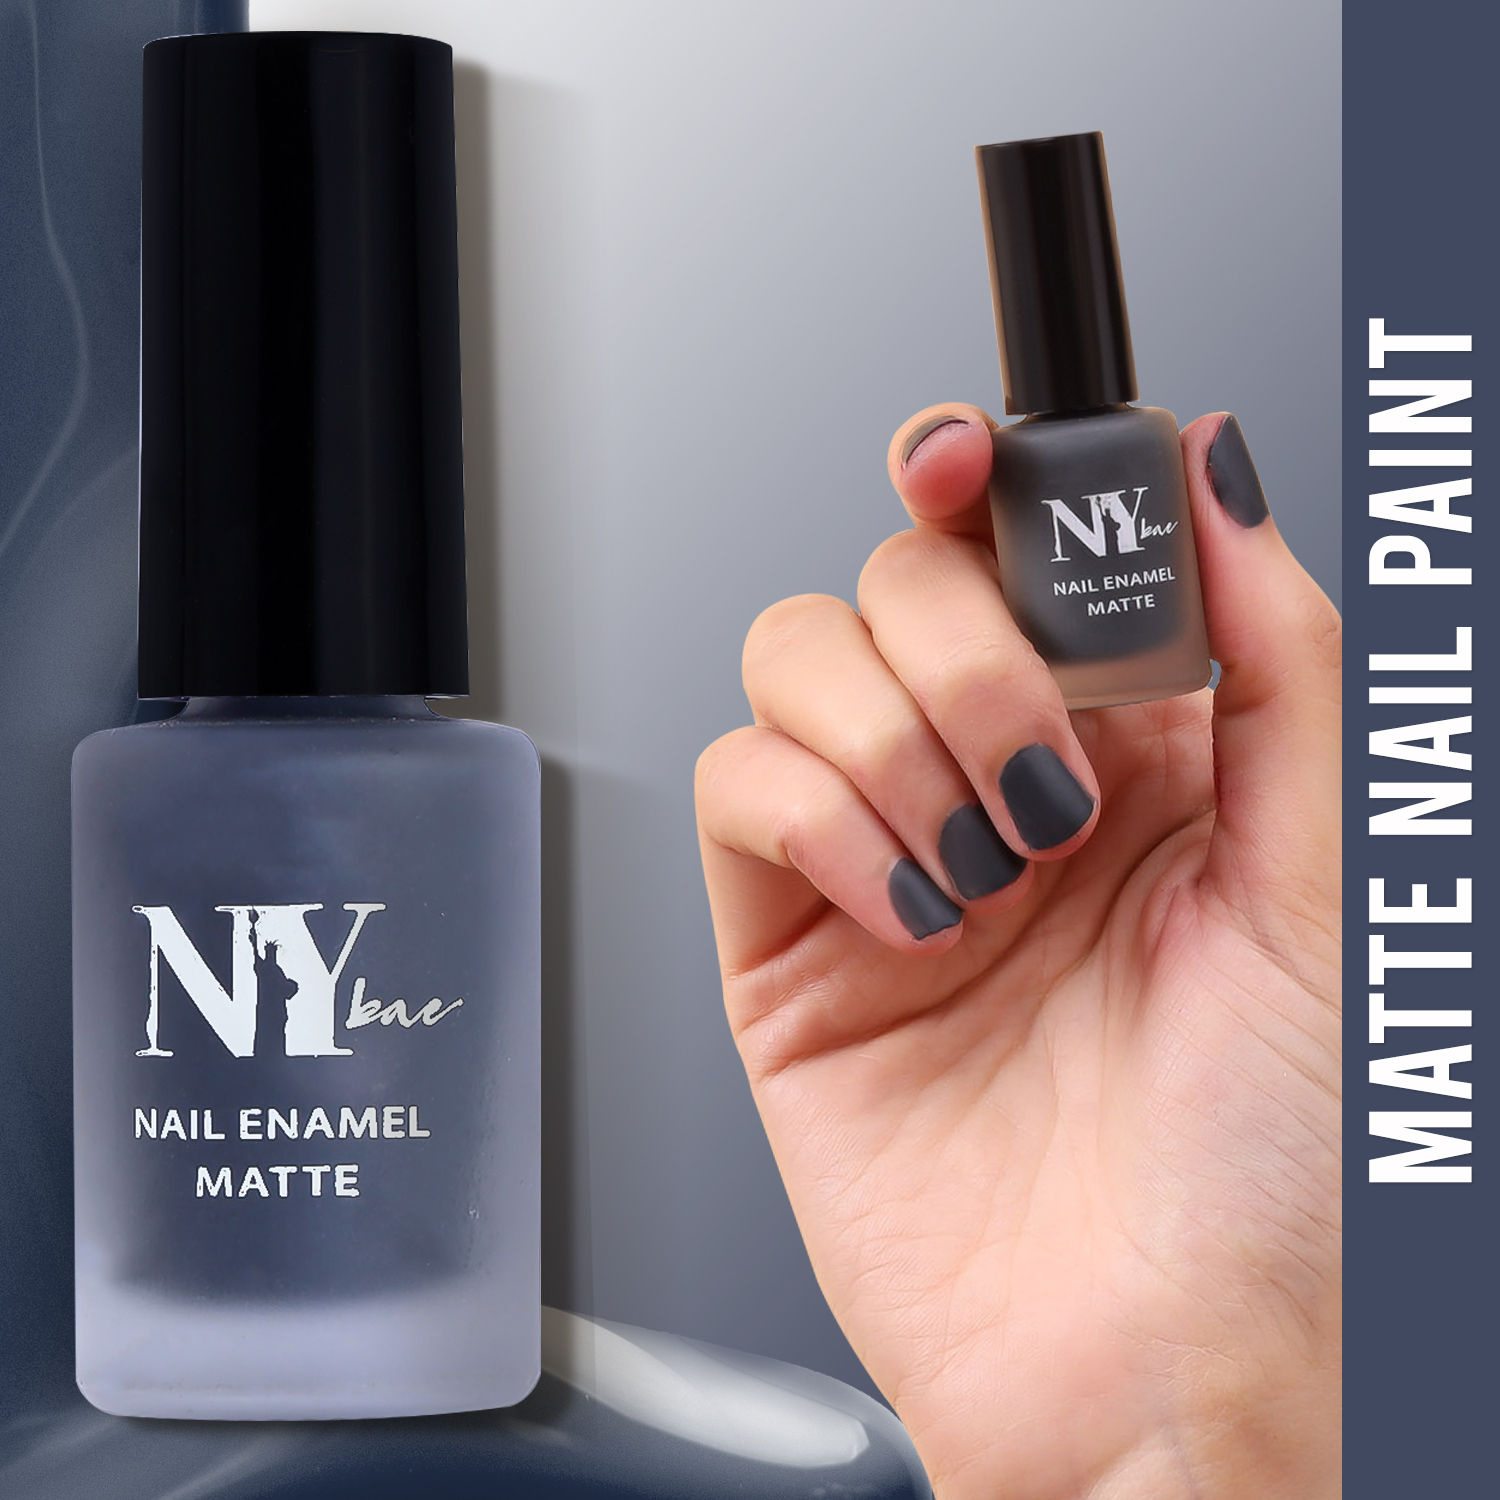 Beauty & Personal Care / Nail Polish | Nail paint shades, Nail polish,  Brown nail polish